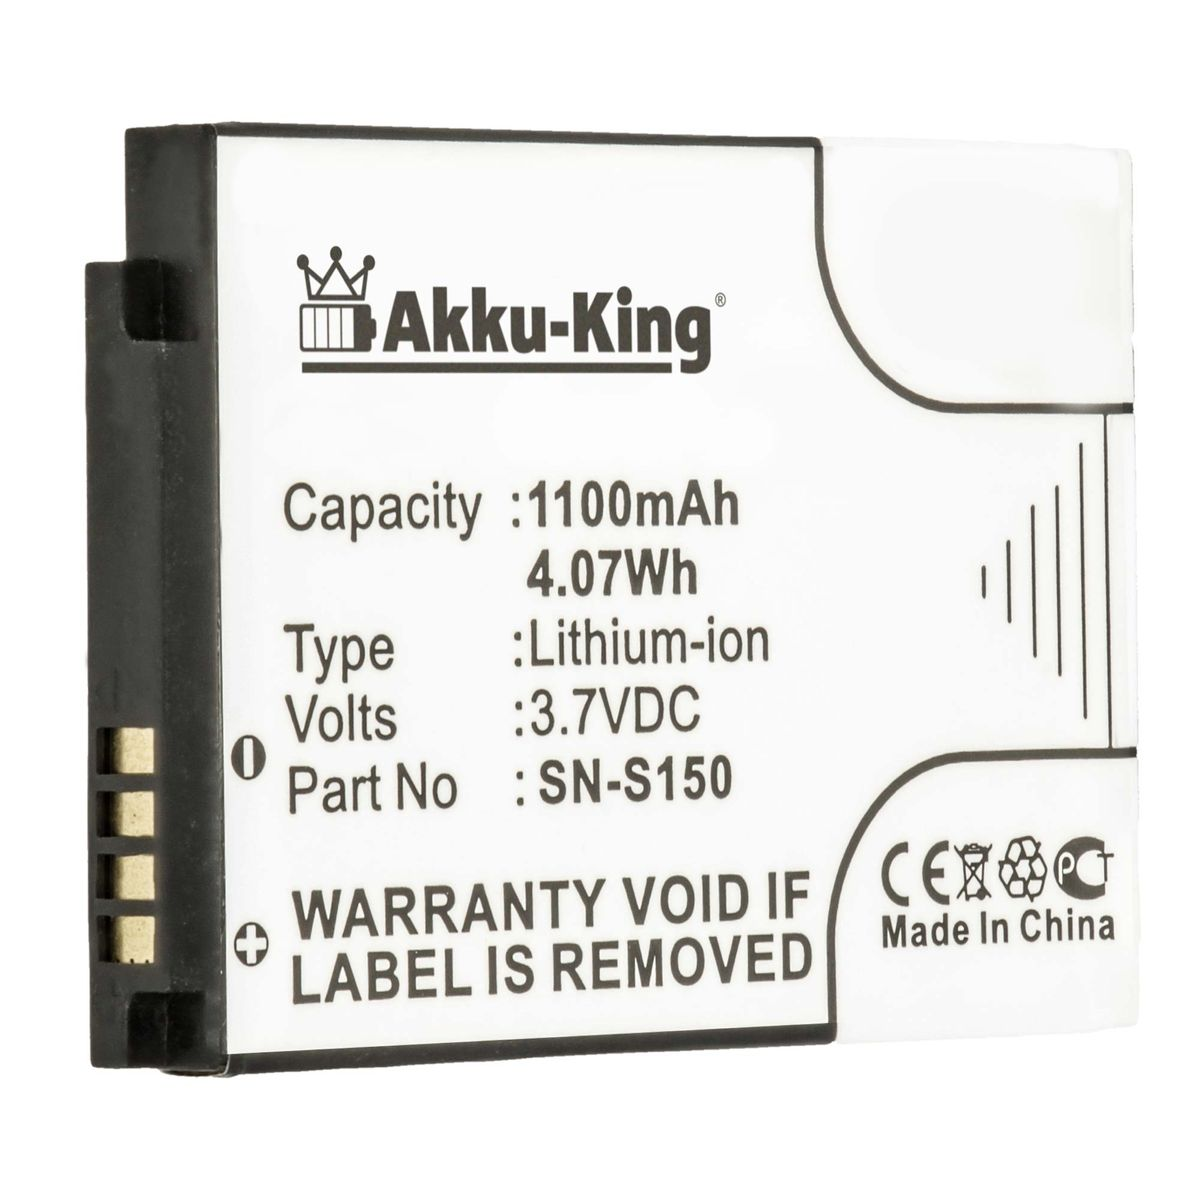 AKKU-KING Akku kompatibel mit Philips N-S150 Volt, 3.7 Geräte-Akku, Li-Ion 1100mAh